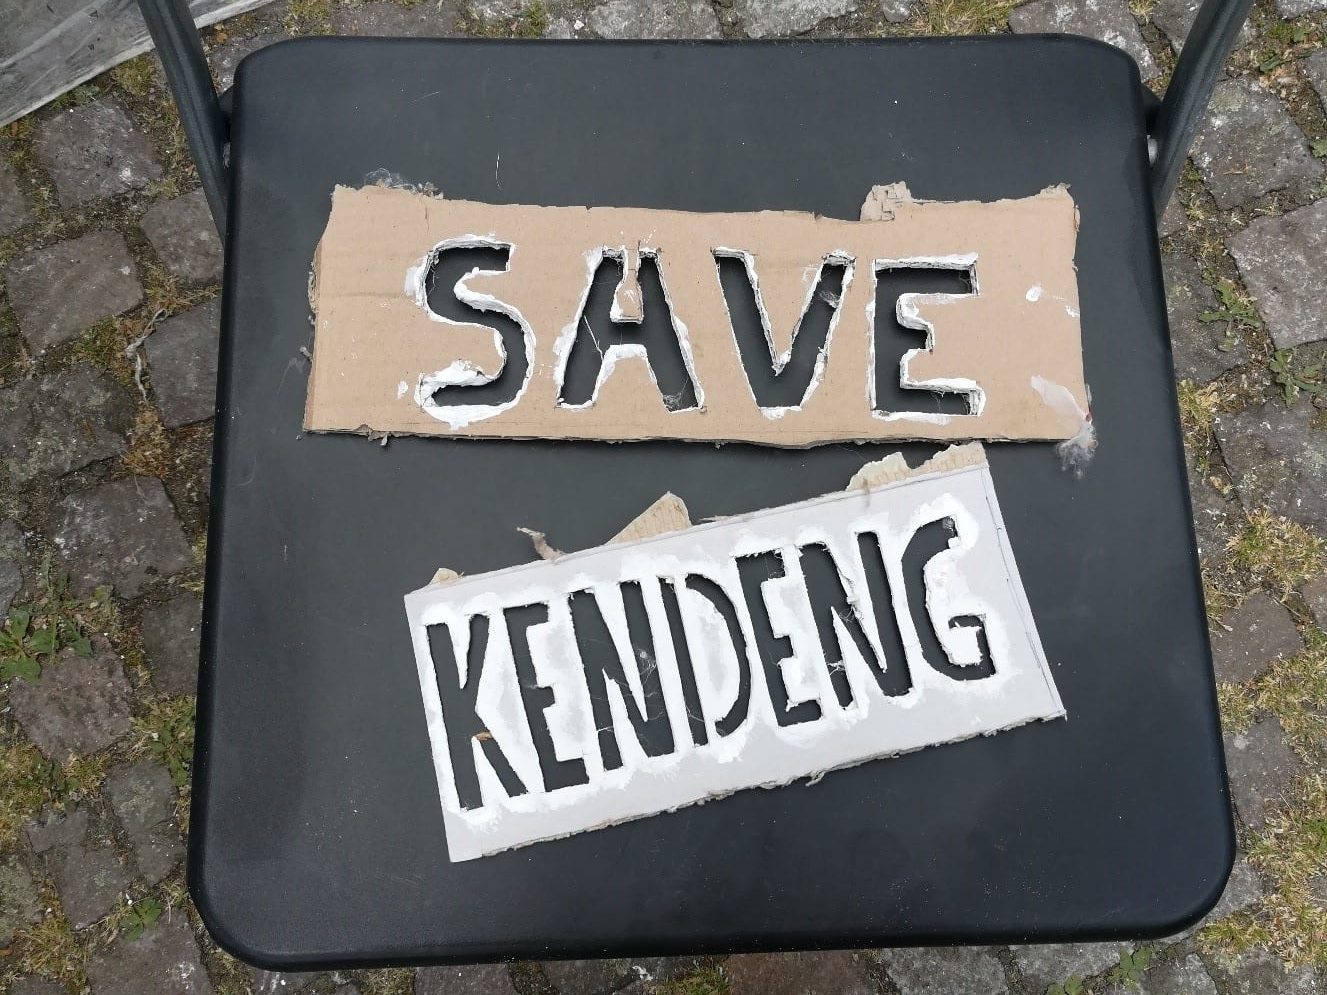 Save Kendeng